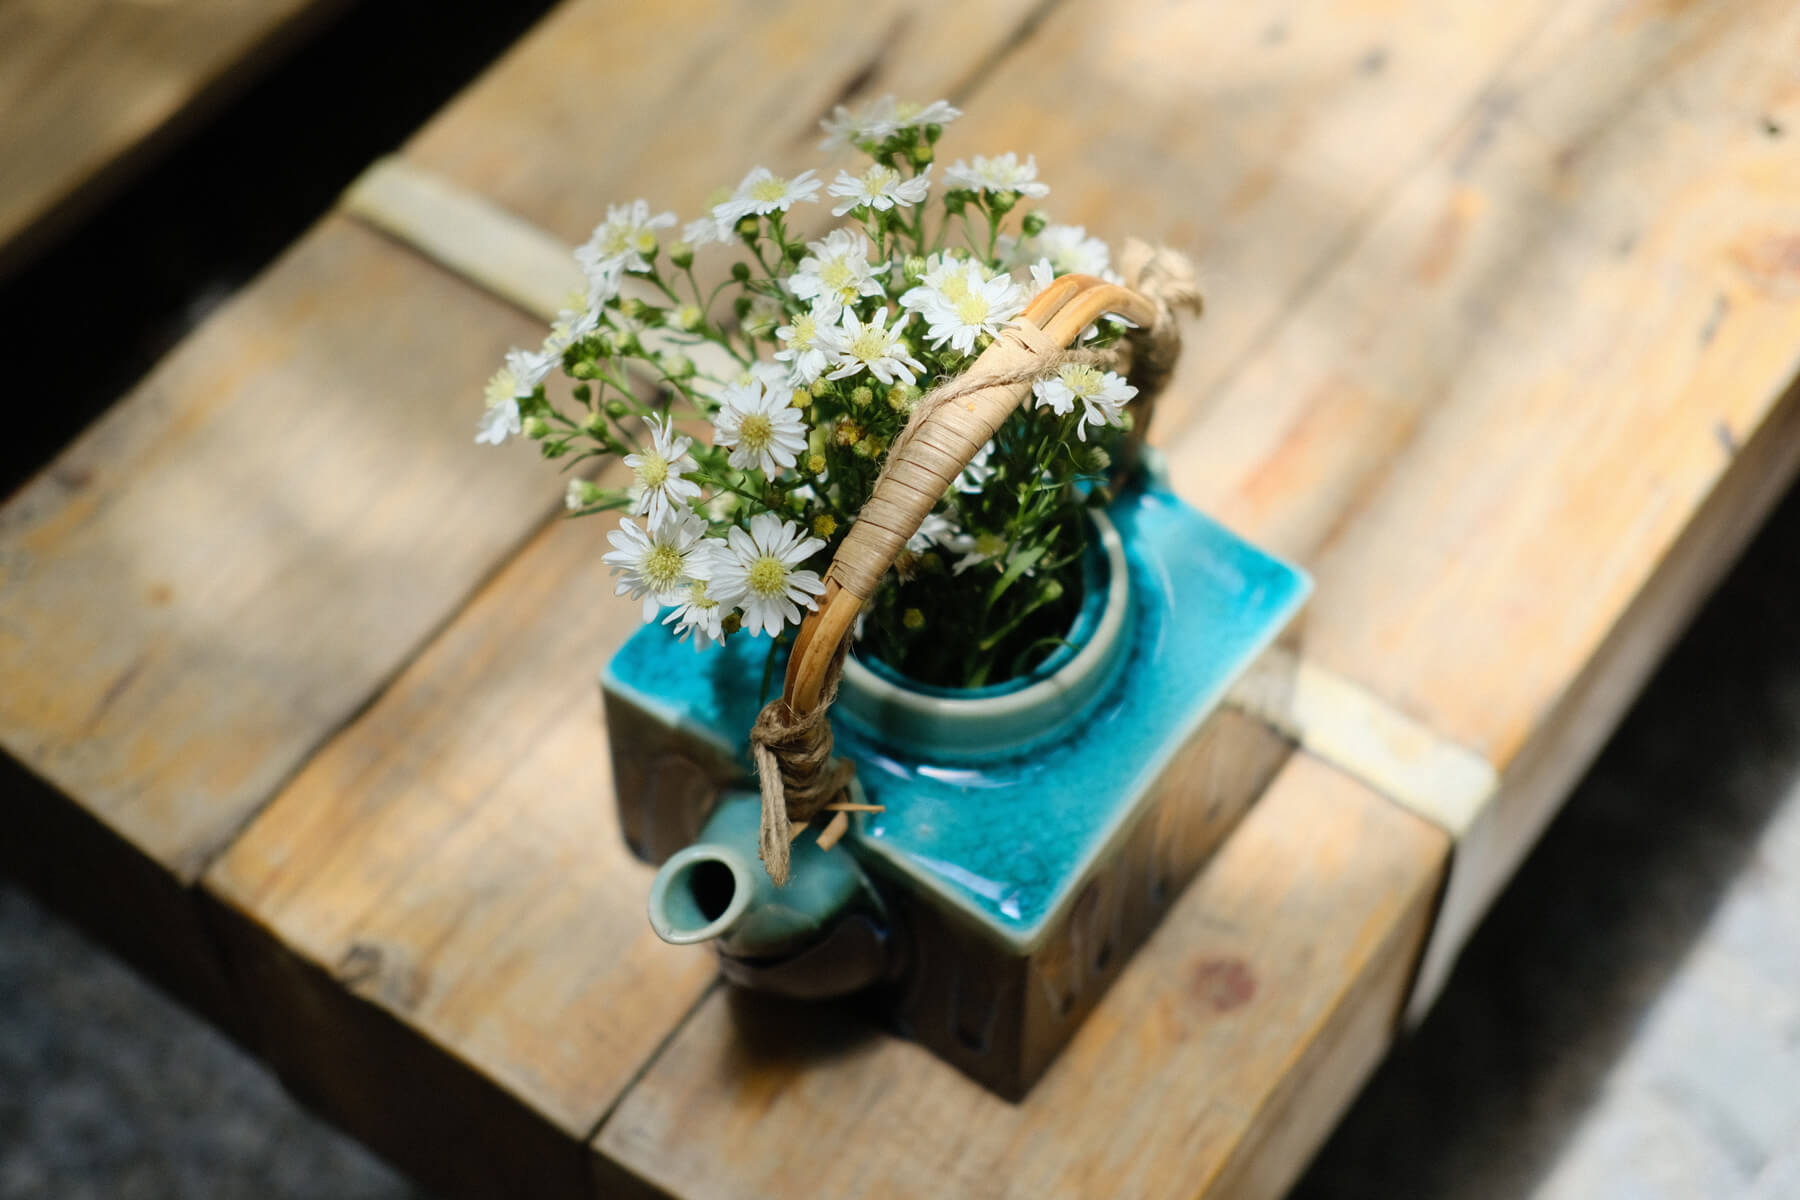 Déco récup : transformer une théière en vase pour fleurs : déco éclectique et originale